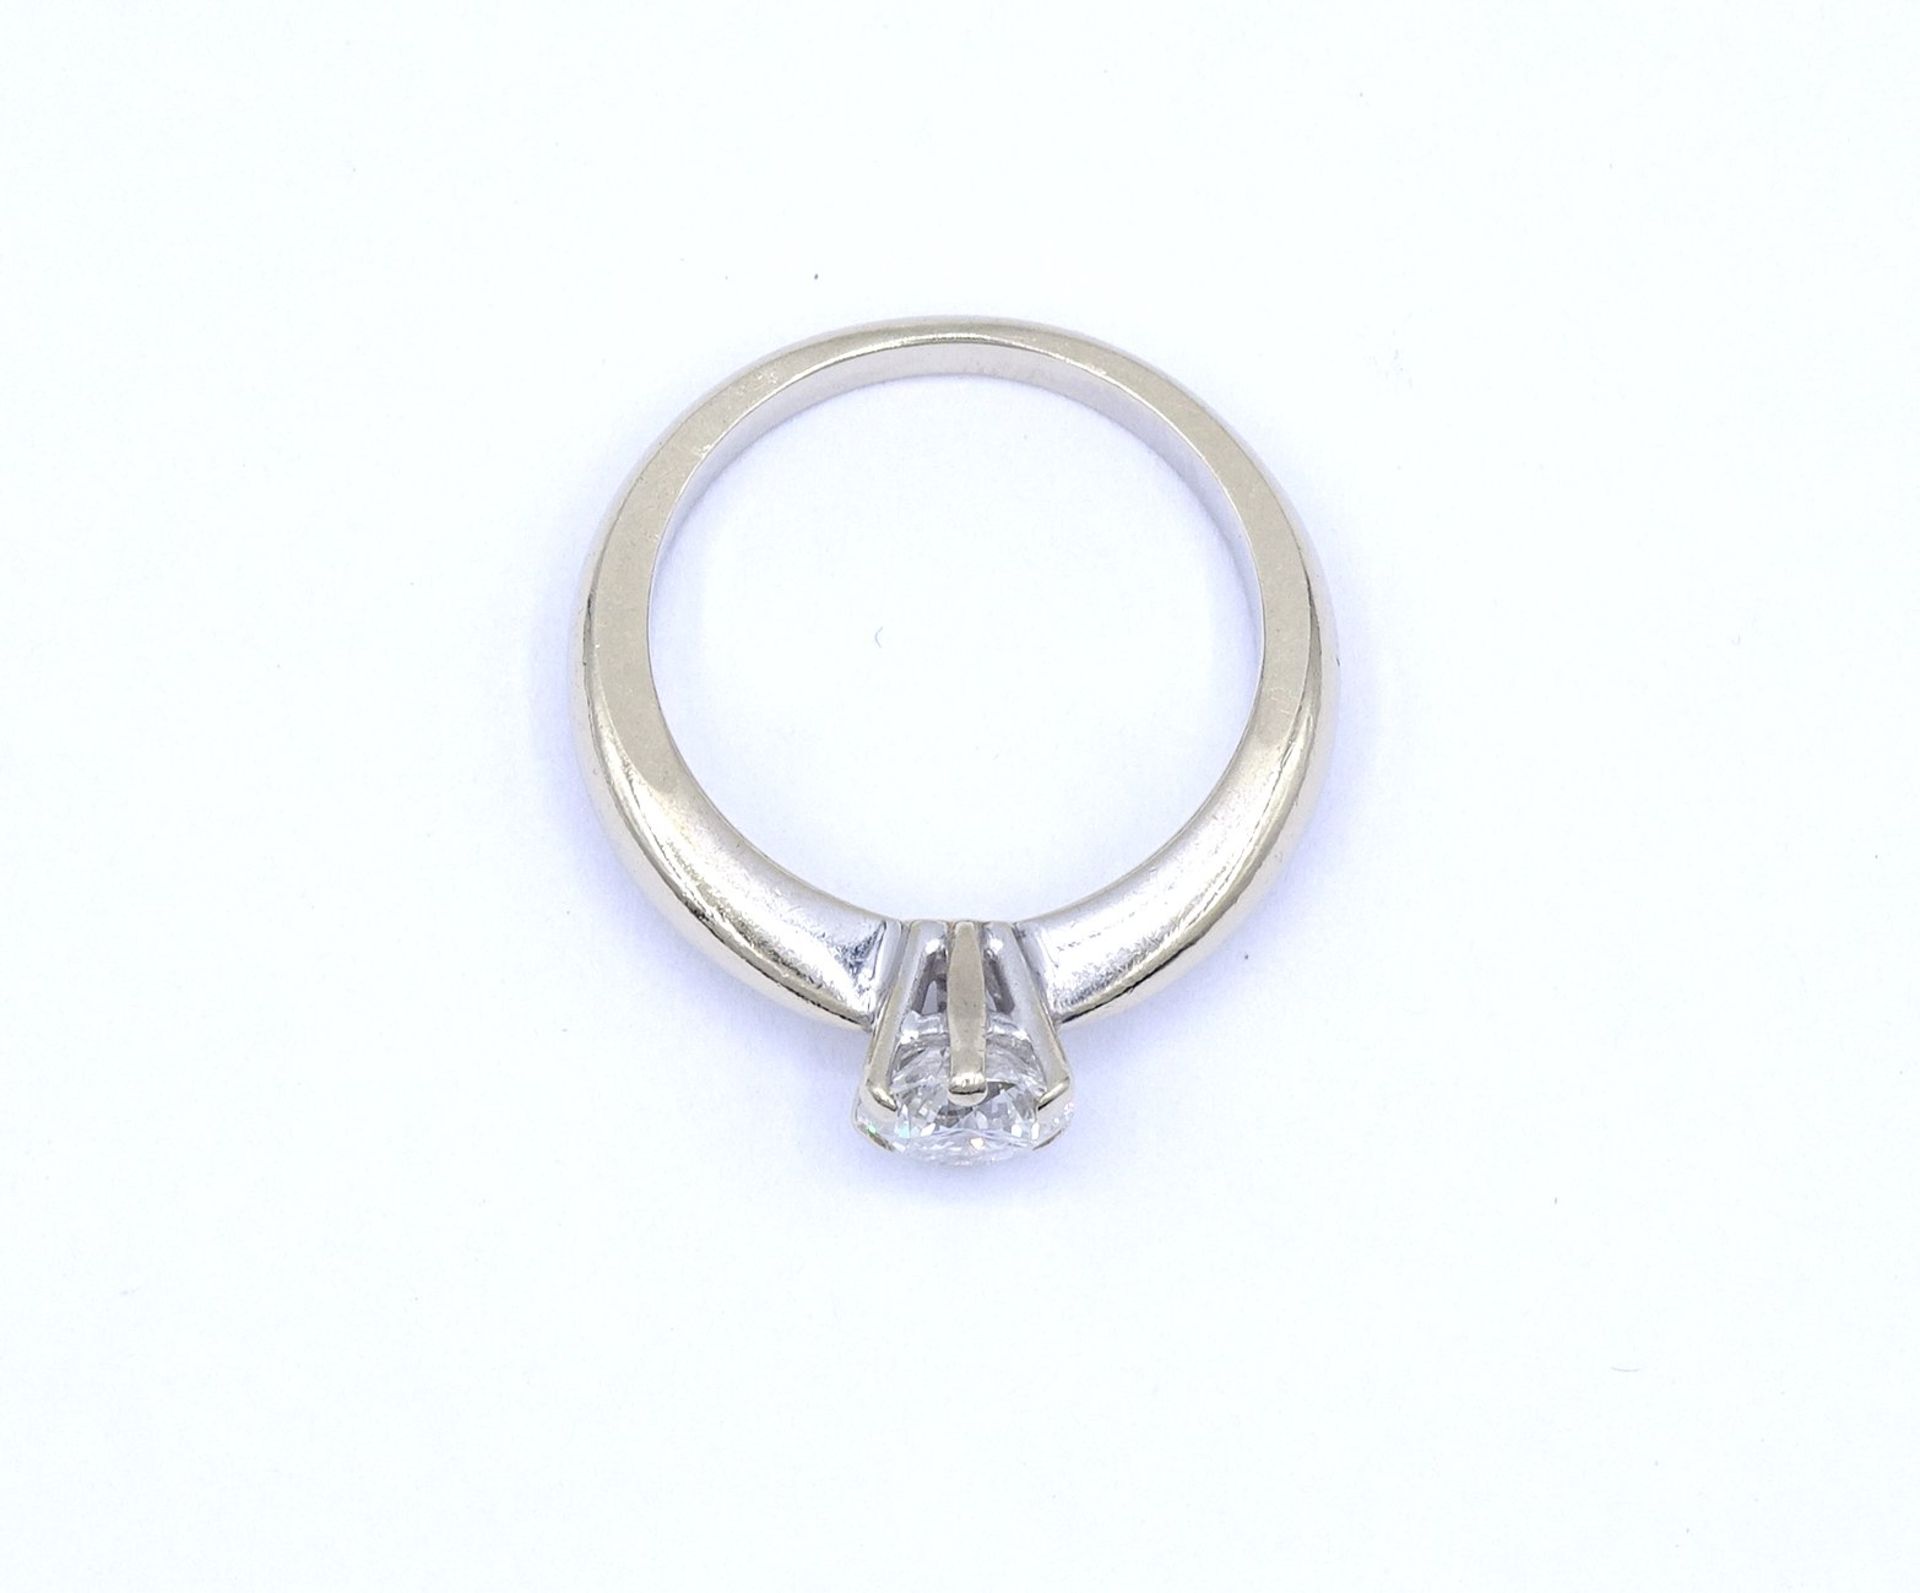 Solitär Brillant Ring, WG 585/000, Brillant 1,0ct., si, i-j, Brillant mit 3 kleinen Abplatzer, 6,1g - Bild 3 aus 7